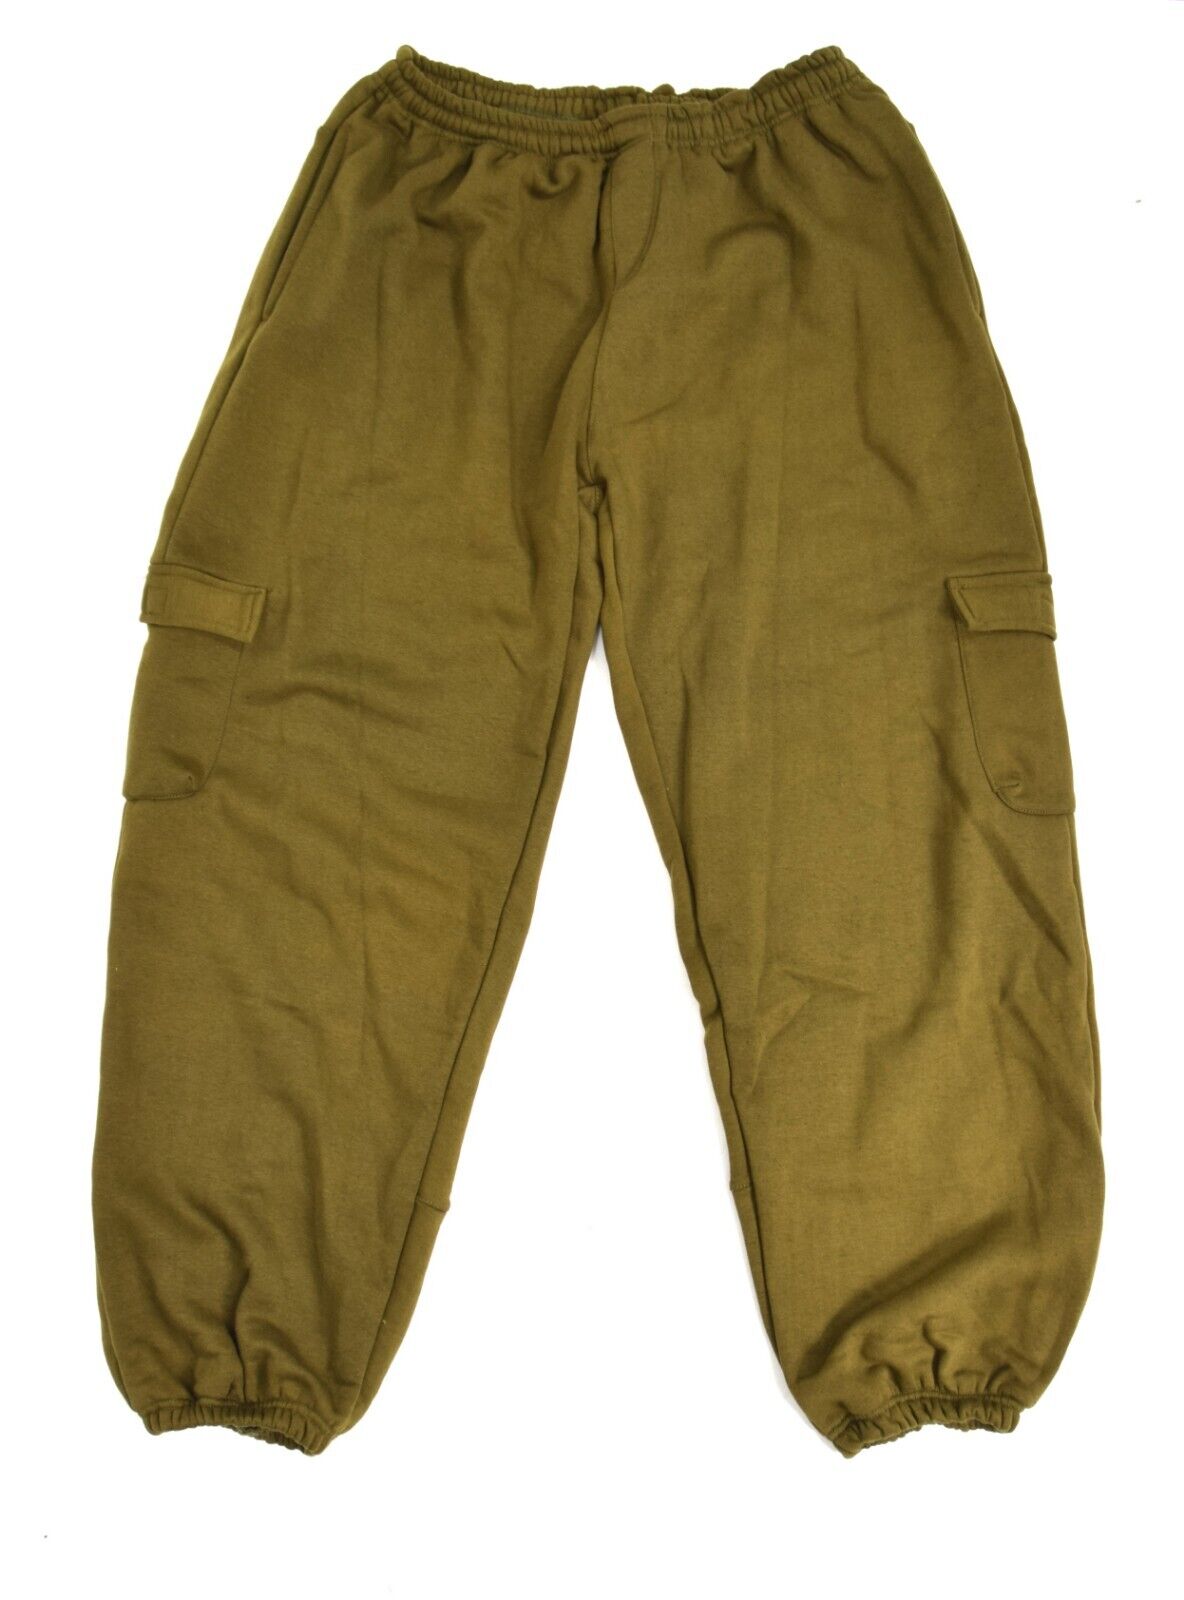 US Army Heavy Duty Combat Joggers Khaki Cargo Fleece Bottoms XL 36"-40" Waist